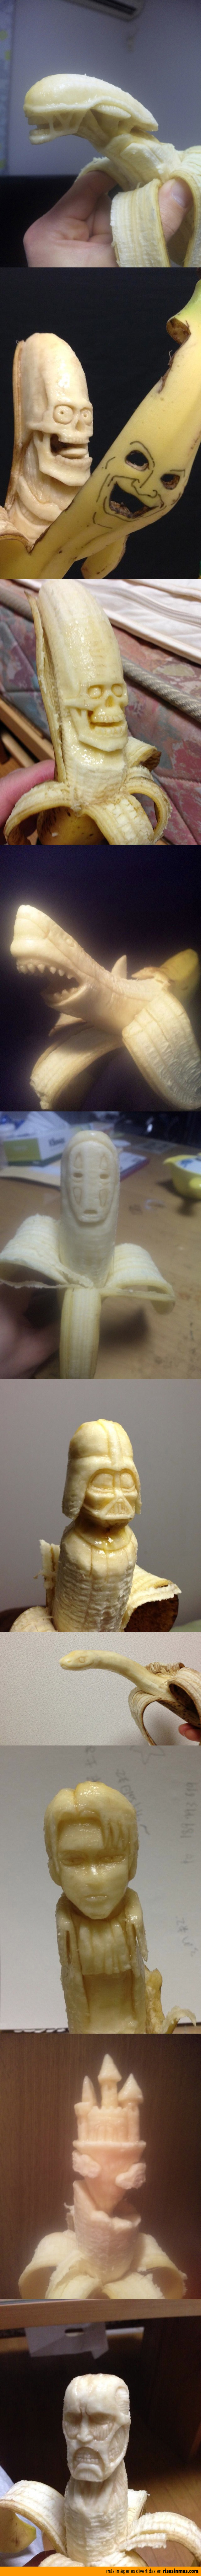 Esculturas hechas con plátanos